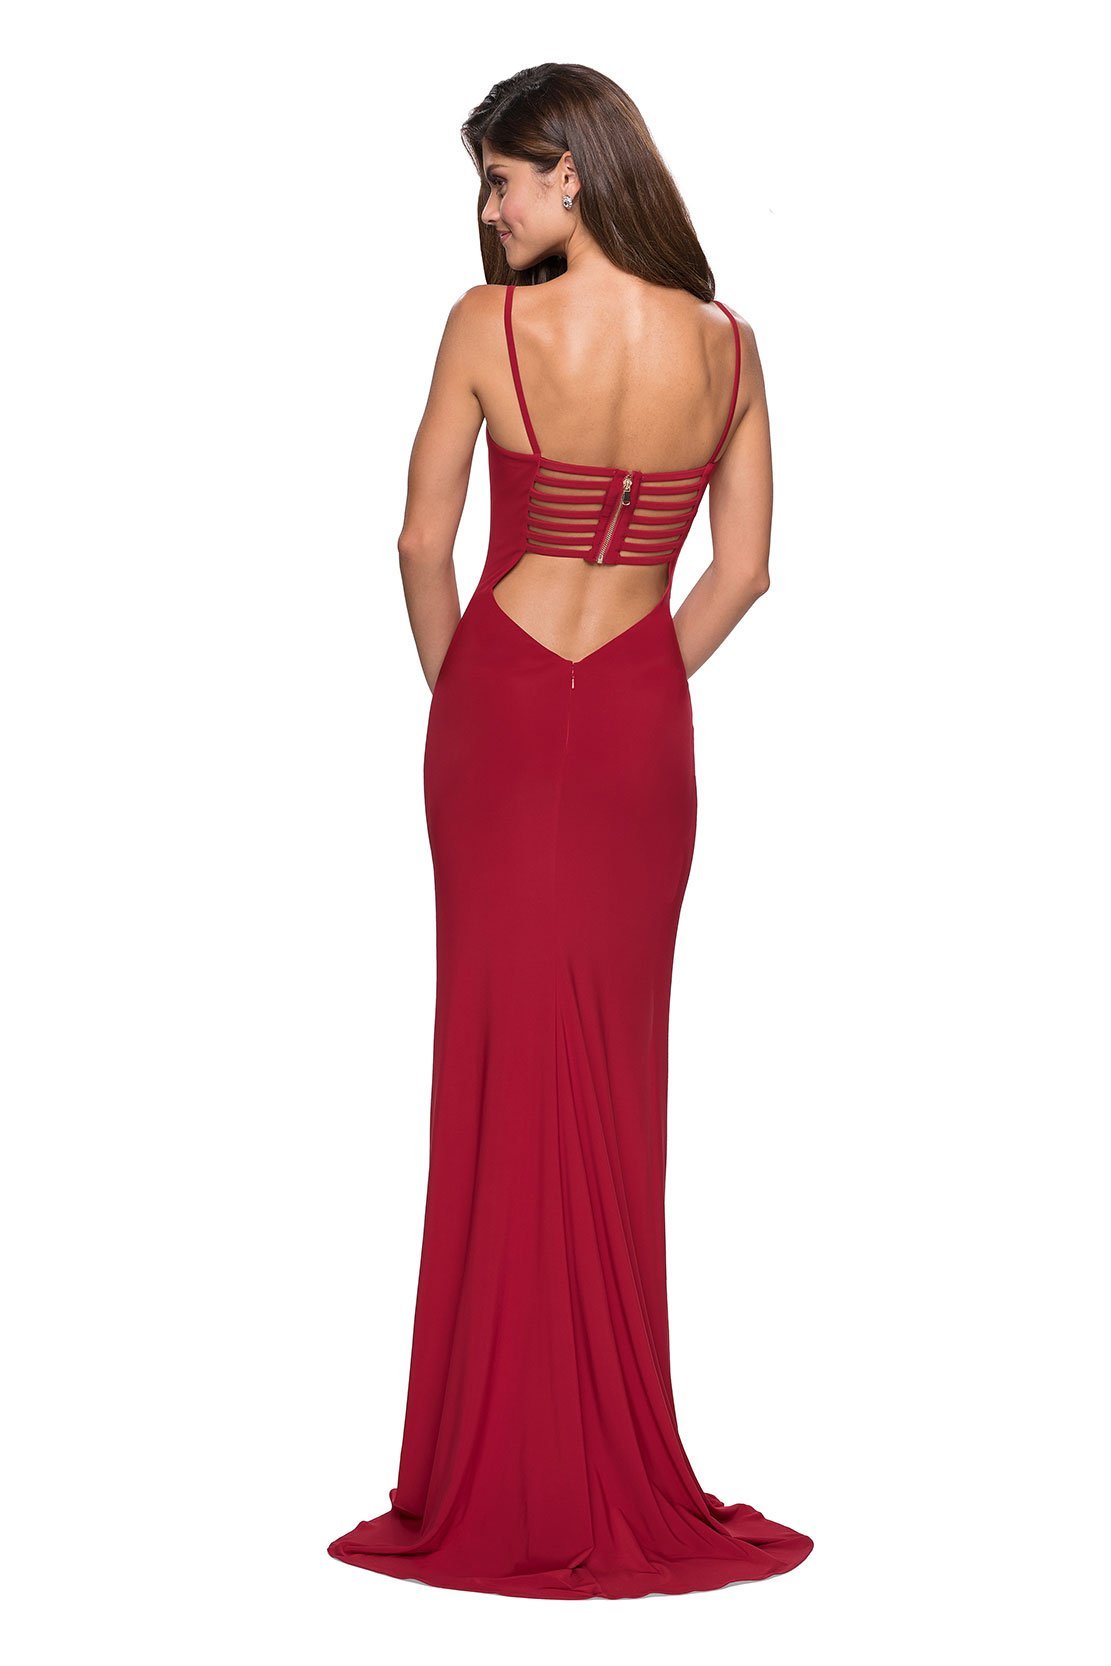 La Femme - Ladder Back Scoop Evening Dress with Slit 27469 In Red